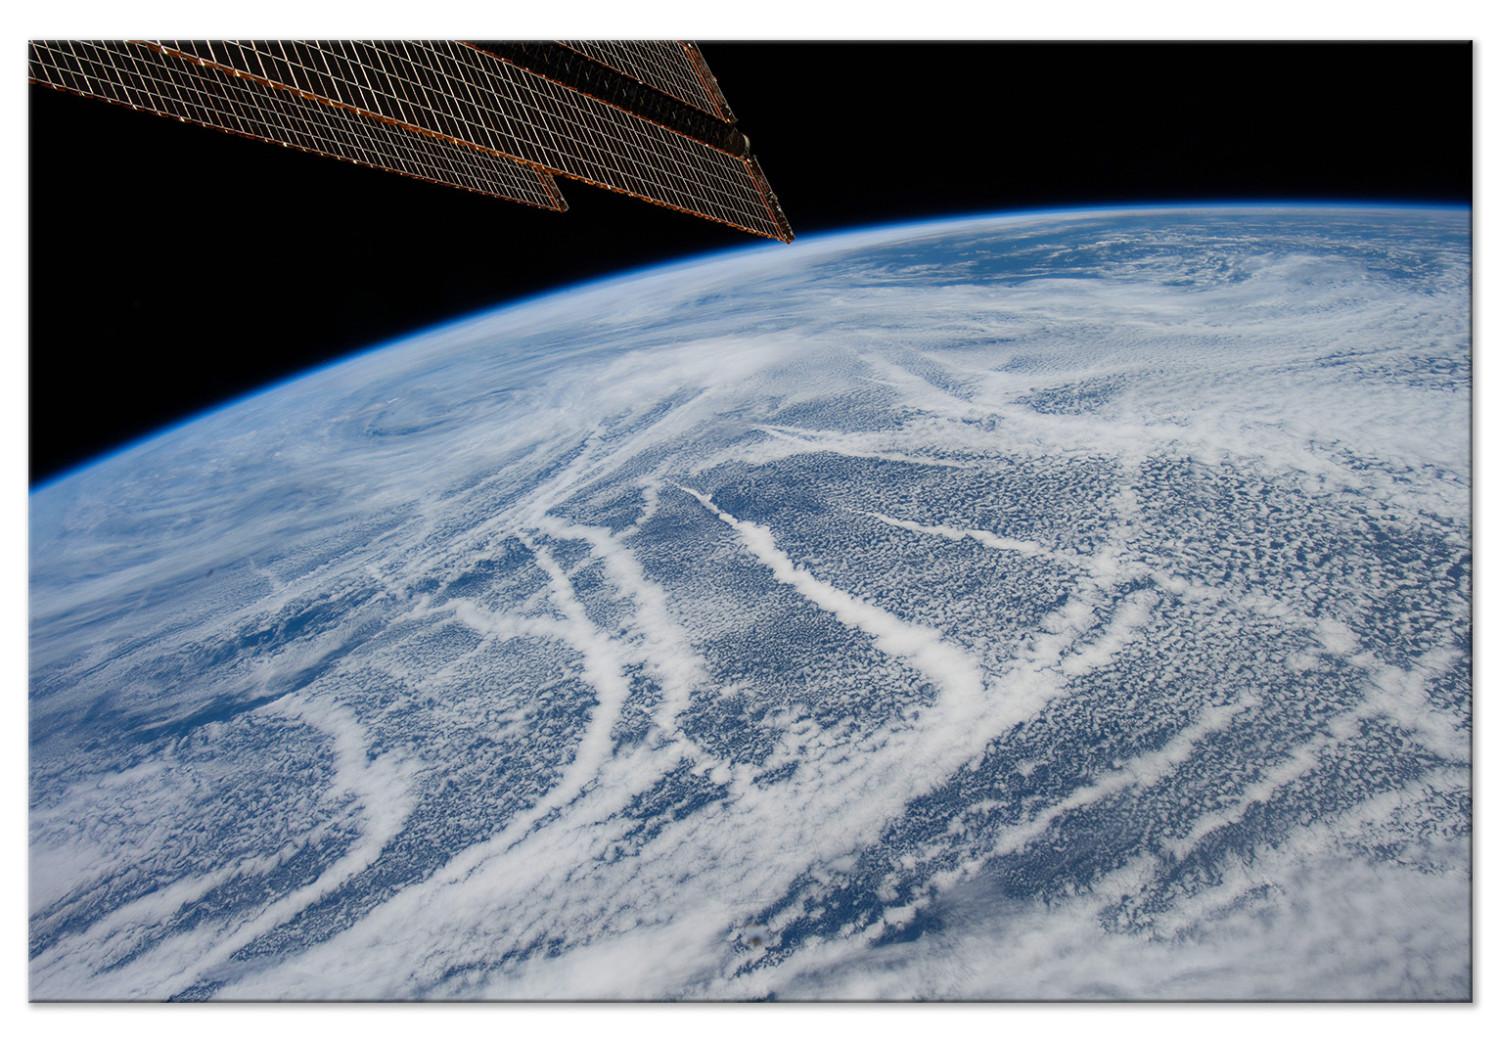 Cuadro decorativo Vuelo espacial - vista satelital de la Tierra y la banda de nubes